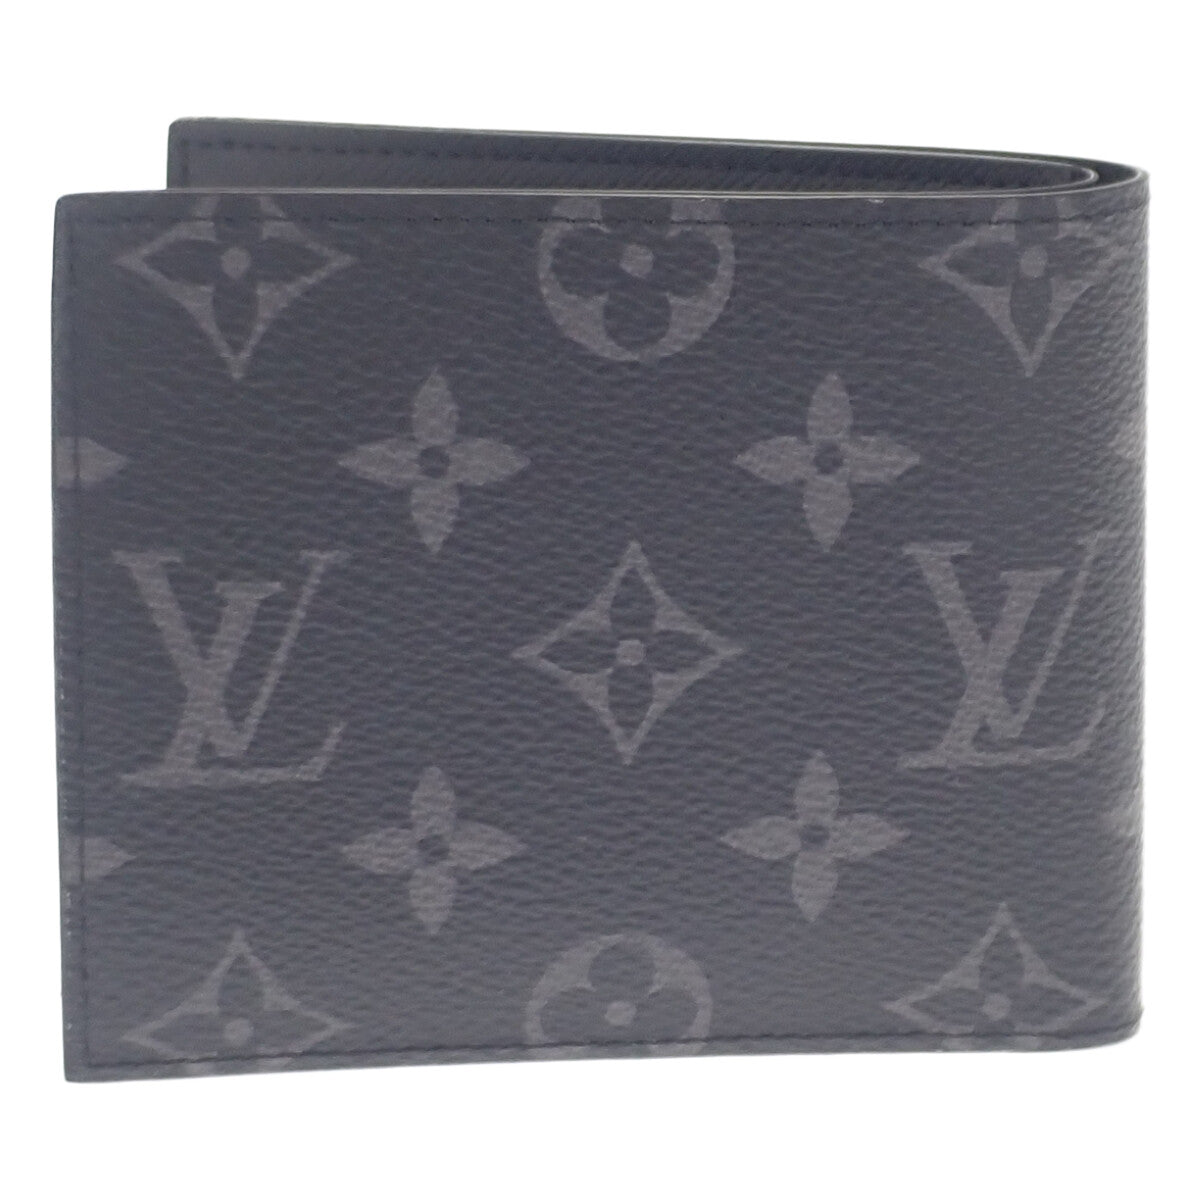 Louis Vuitton Portefeuille Marco Canvas Short Wallet M62545 in Excellent condition